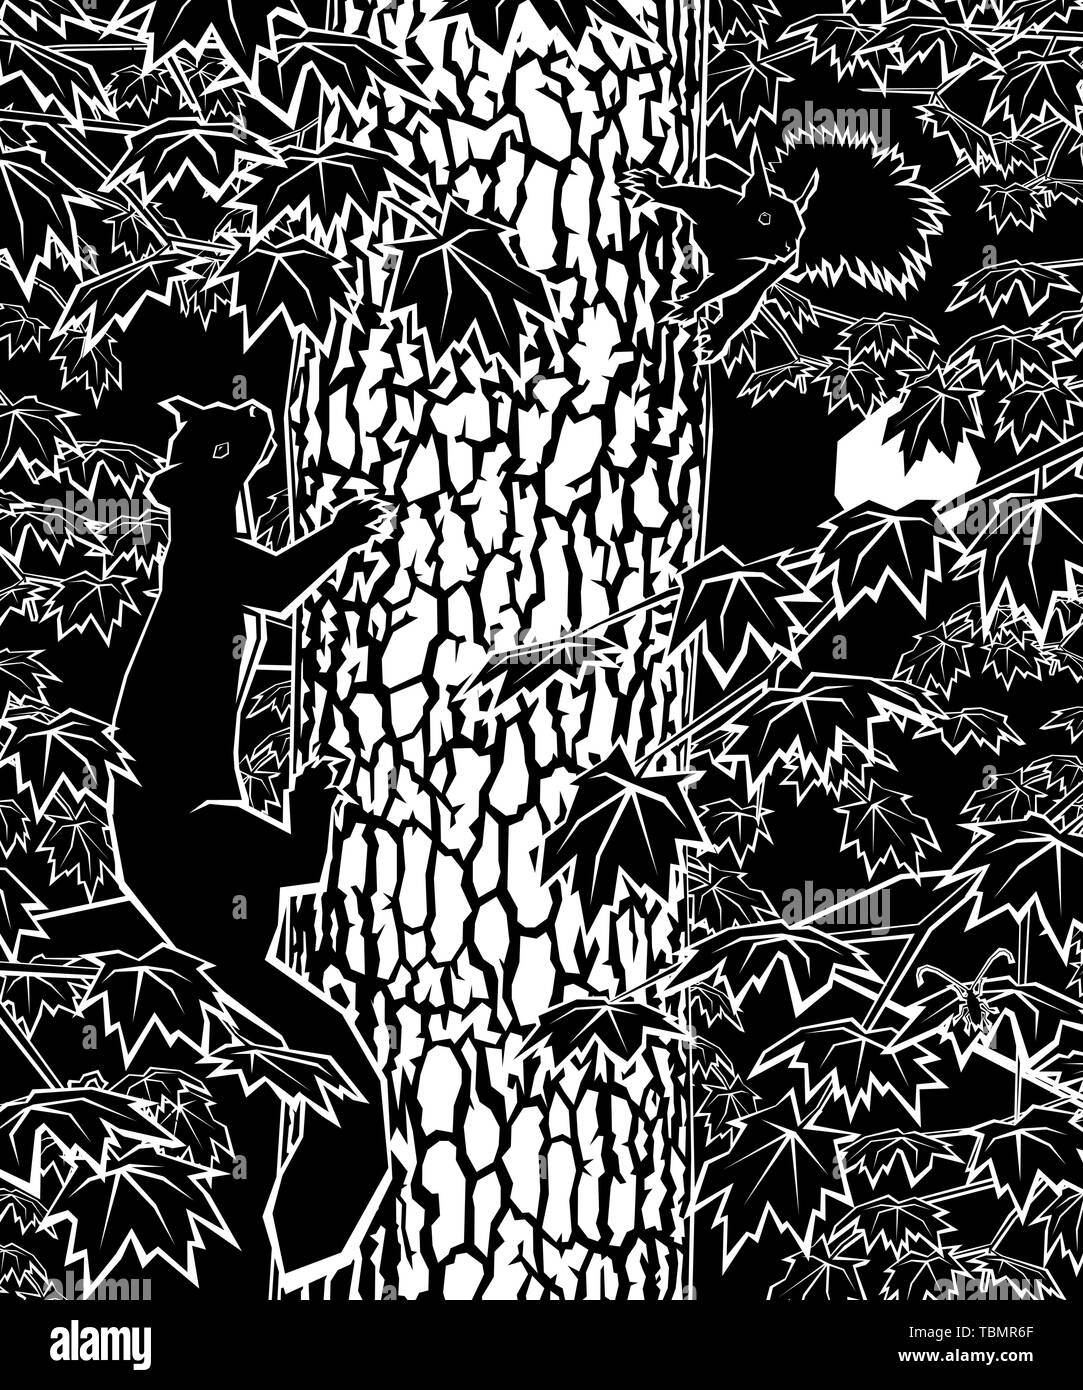 Ilustración de un pino marten persiguiendo una ardilla roja alrededor de un tronco de árbol Ilustración del Vector